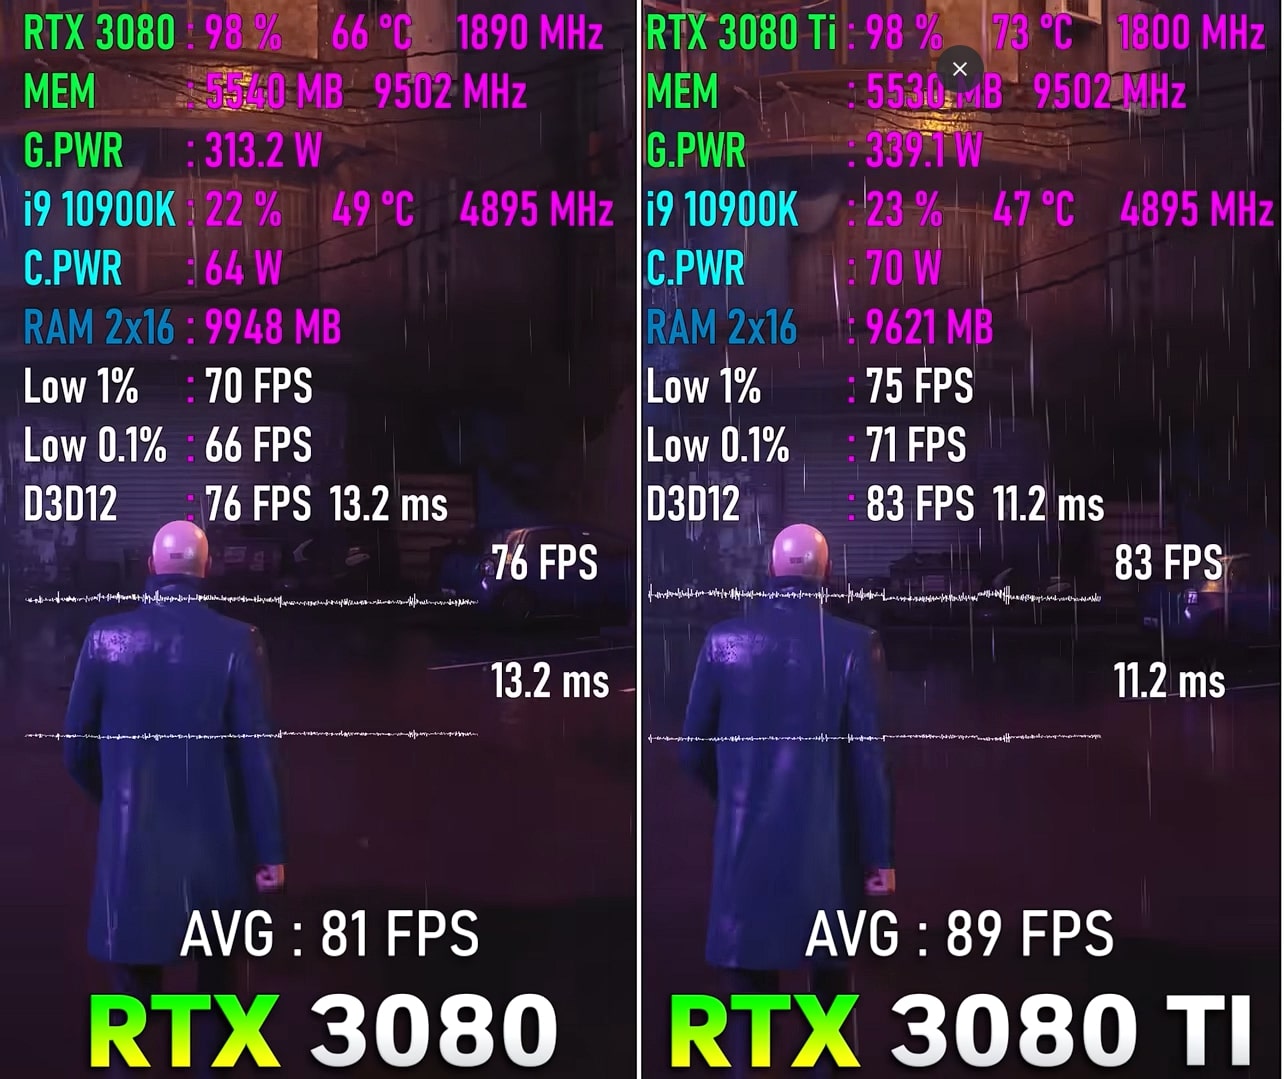 RTX 3060 Vs. RTX 3060 Ti comparision on Hitman 3